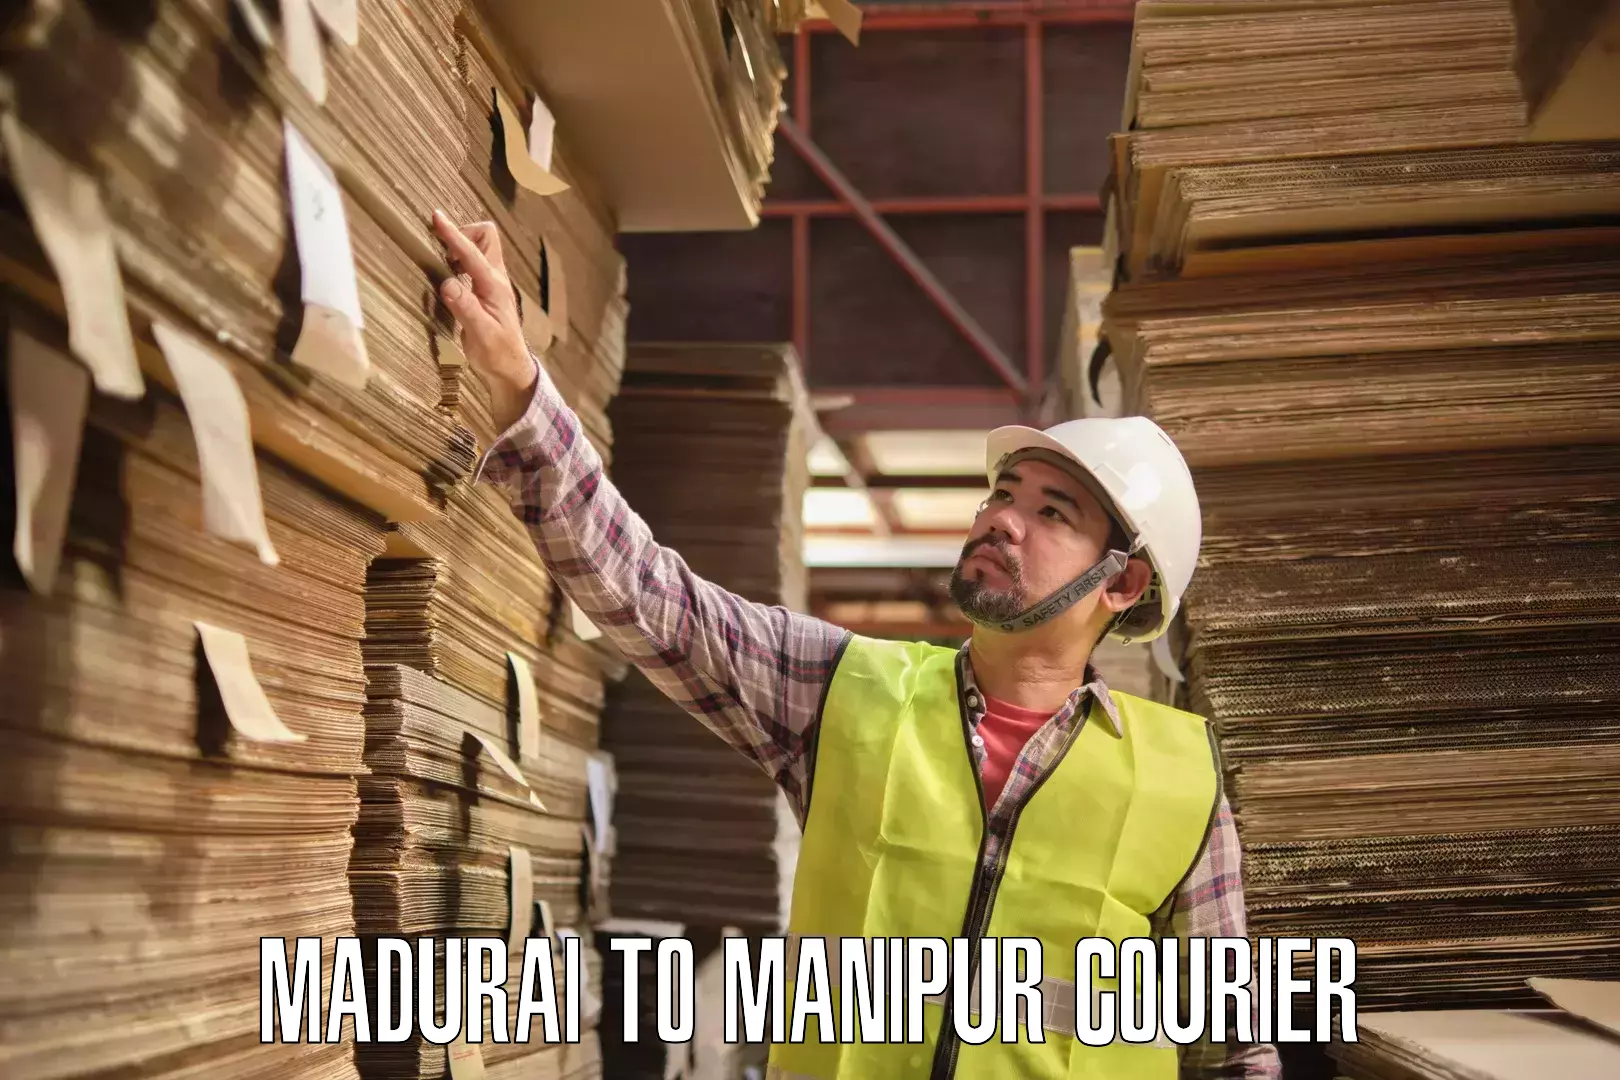 Digital courier platforms Madurai to Manipur